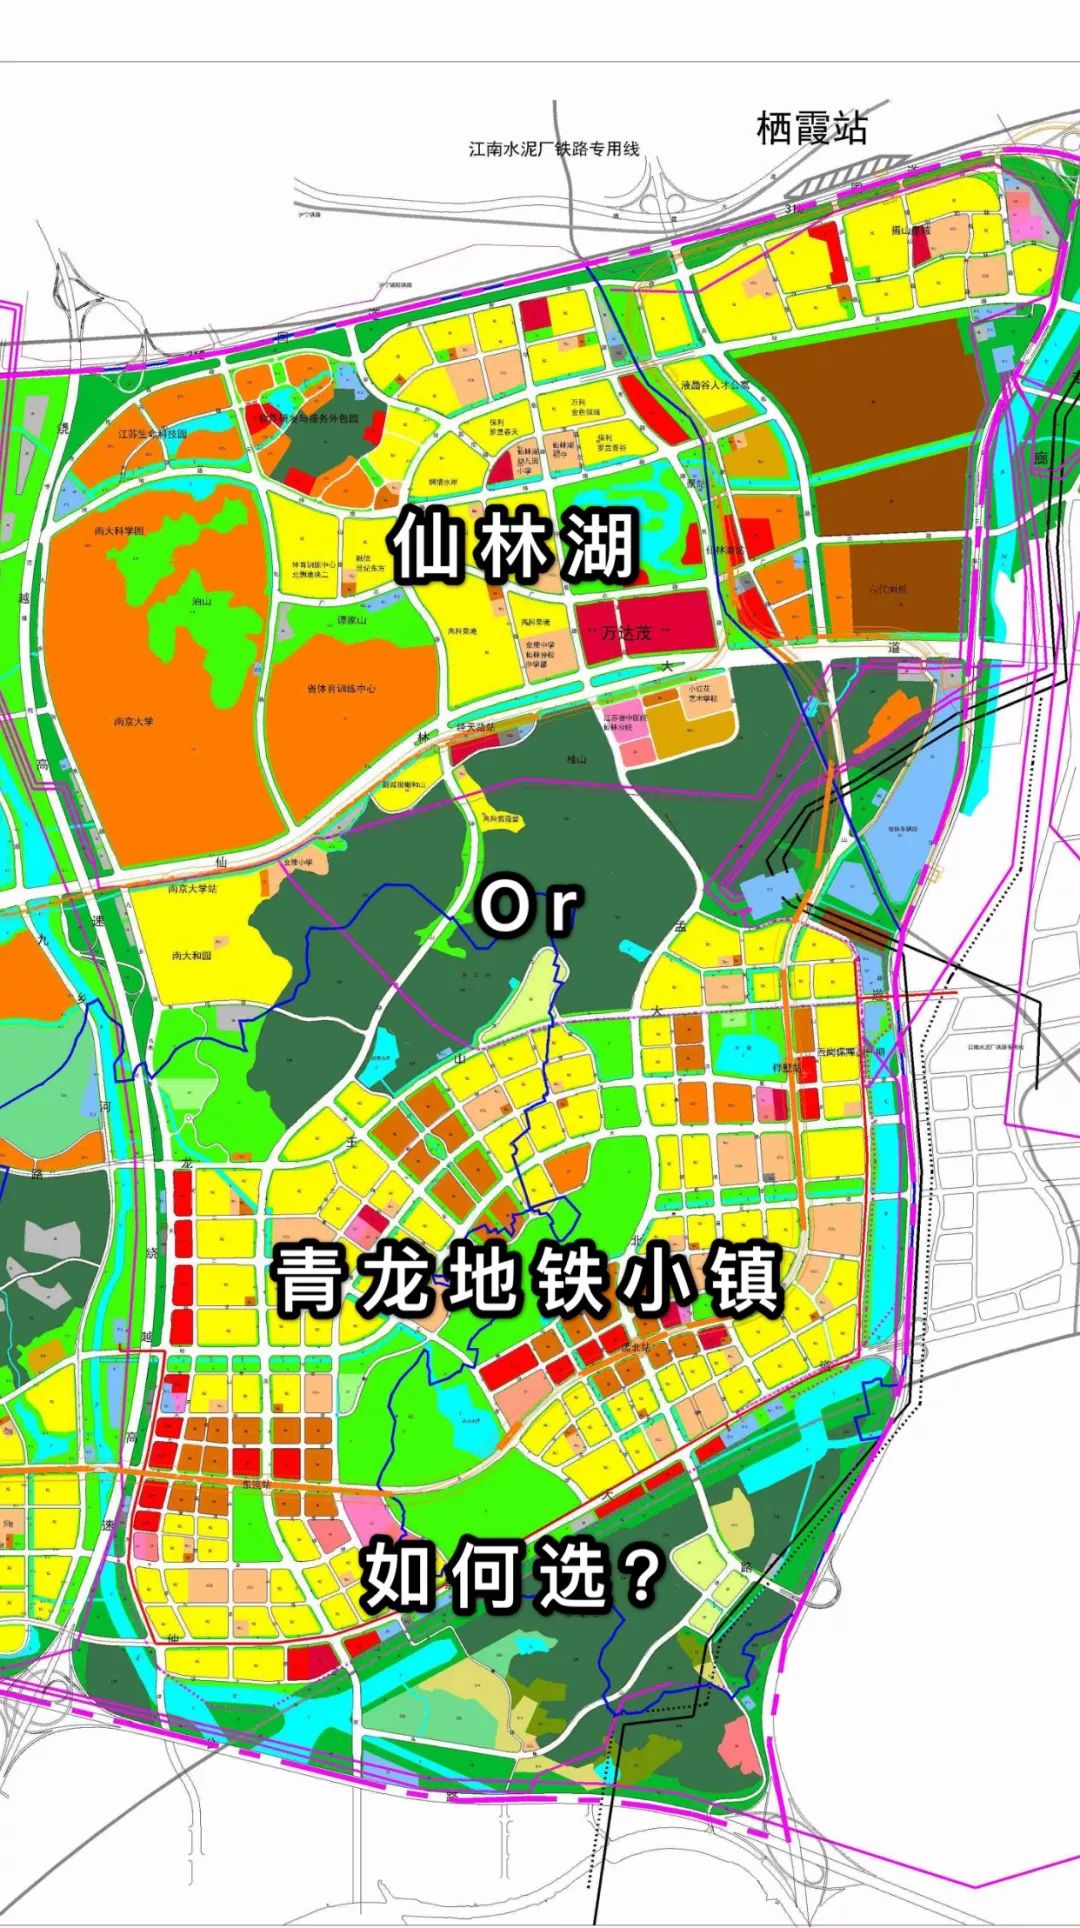 凤家盘点:仙林湖和青龙地铁小镇,如何选?